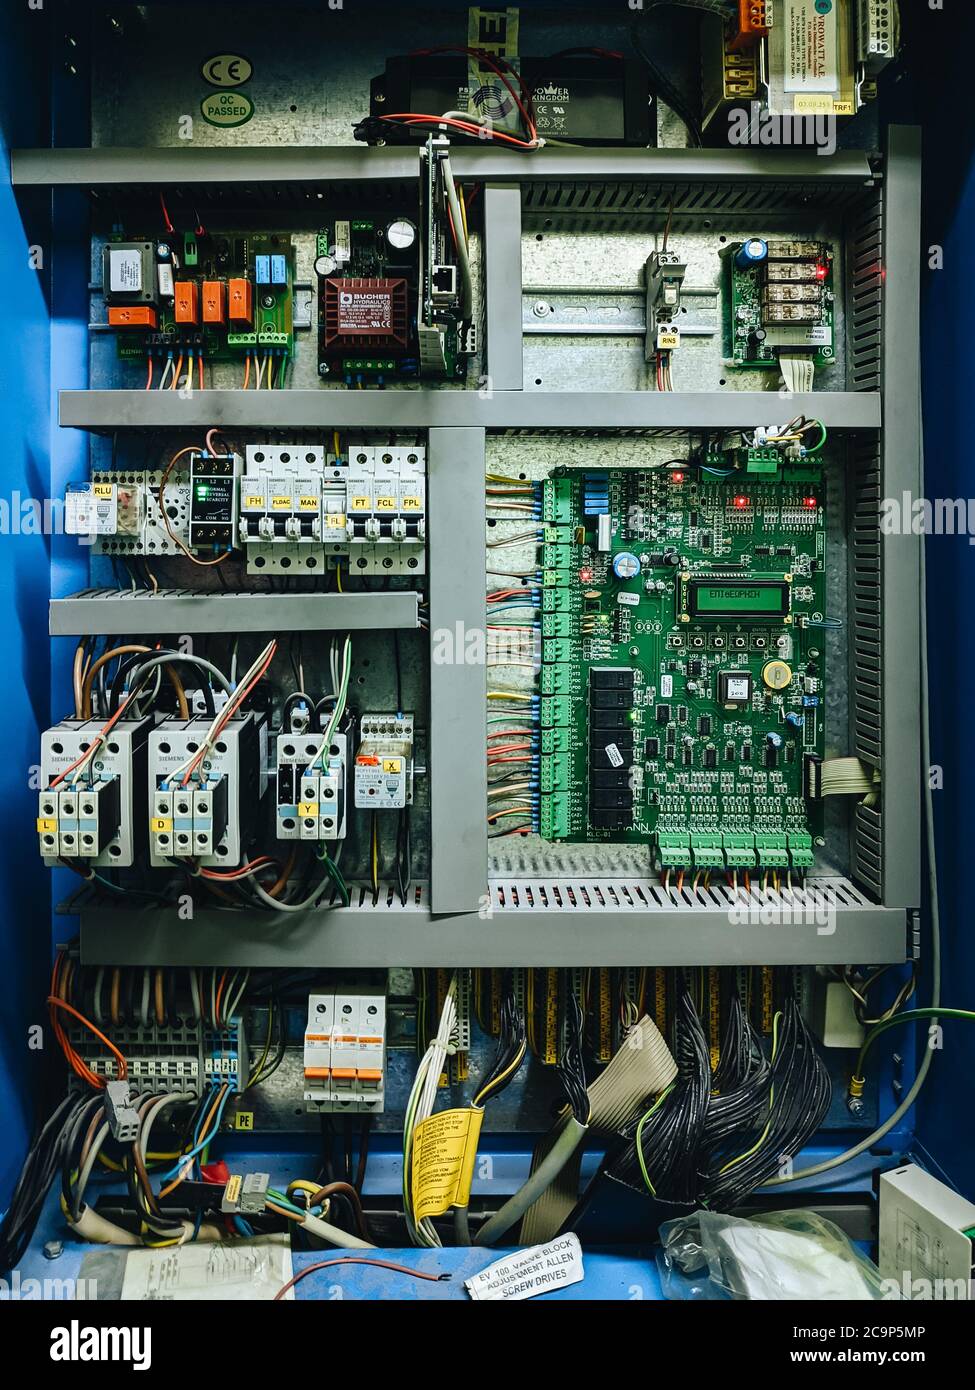 Budva, Montenegro - 01 agosto 2020: Quadro di controllo ascensore.  Microcircuito industriale, scheda madre stampata con transistor e fusibili  e Foto stock - Alamy